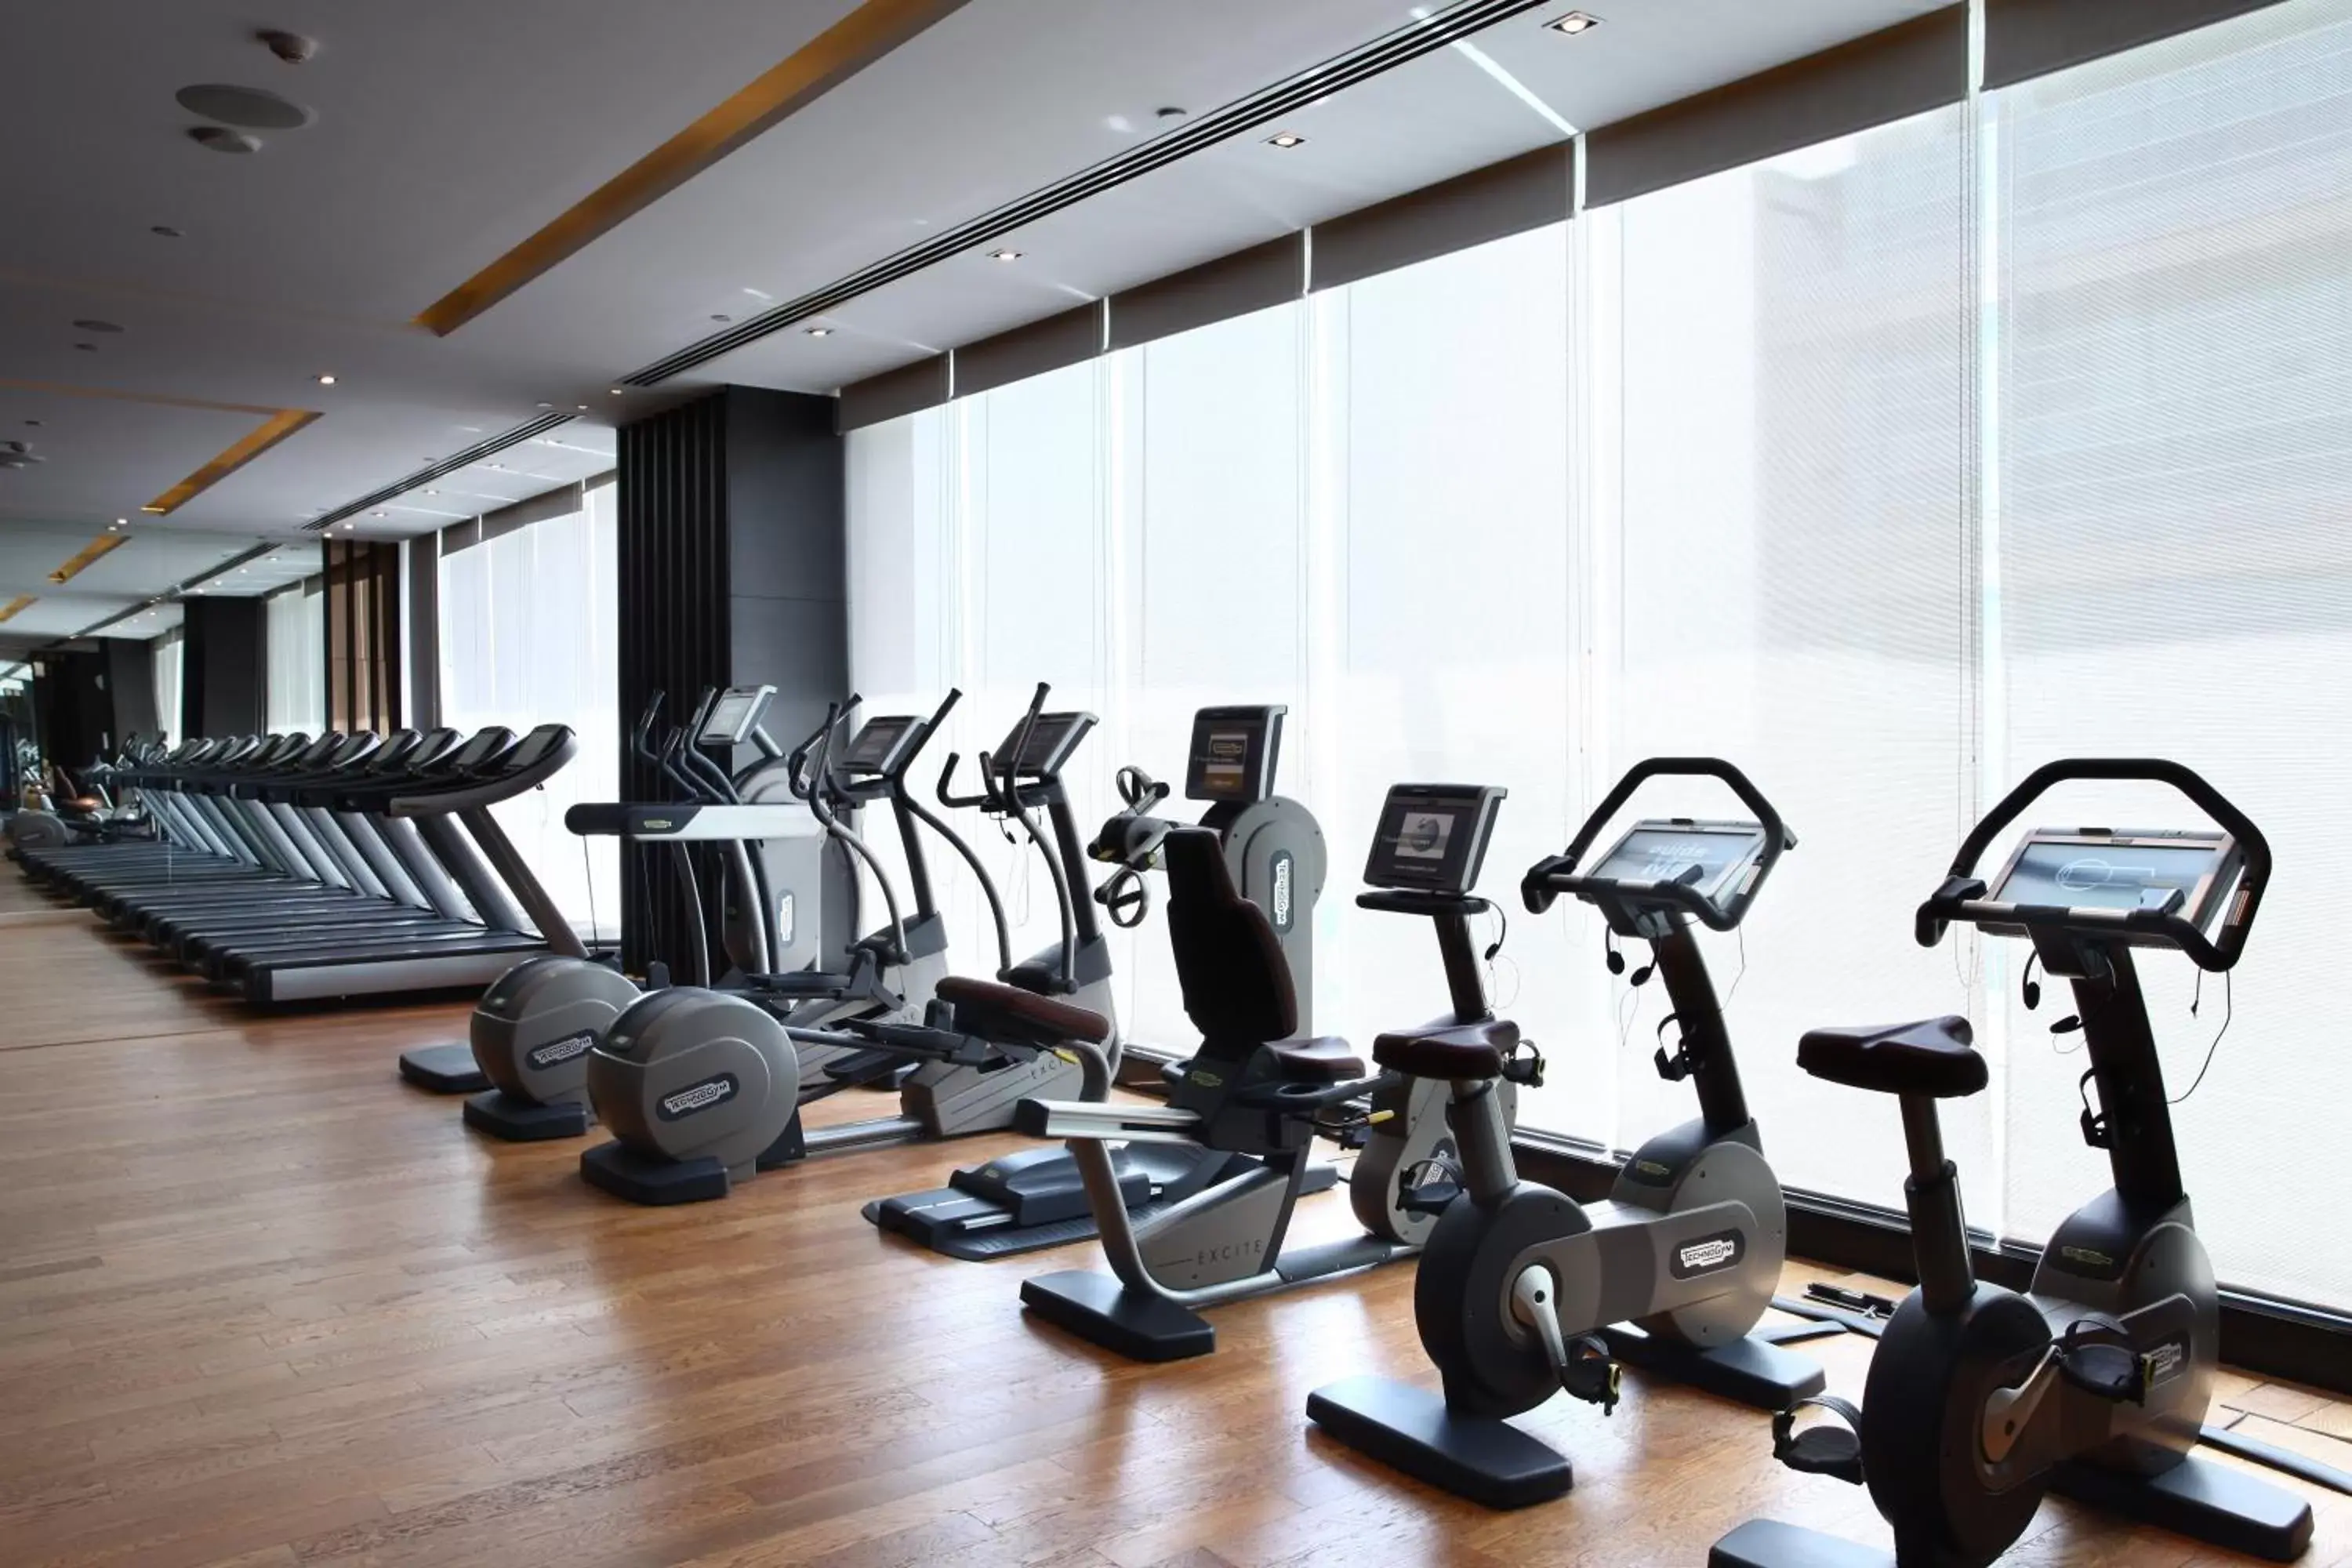 Fitness centre/facilities, Fitness Center/Facilities in Crowne Plaza New Delhi Rohini, an IHG Hotel